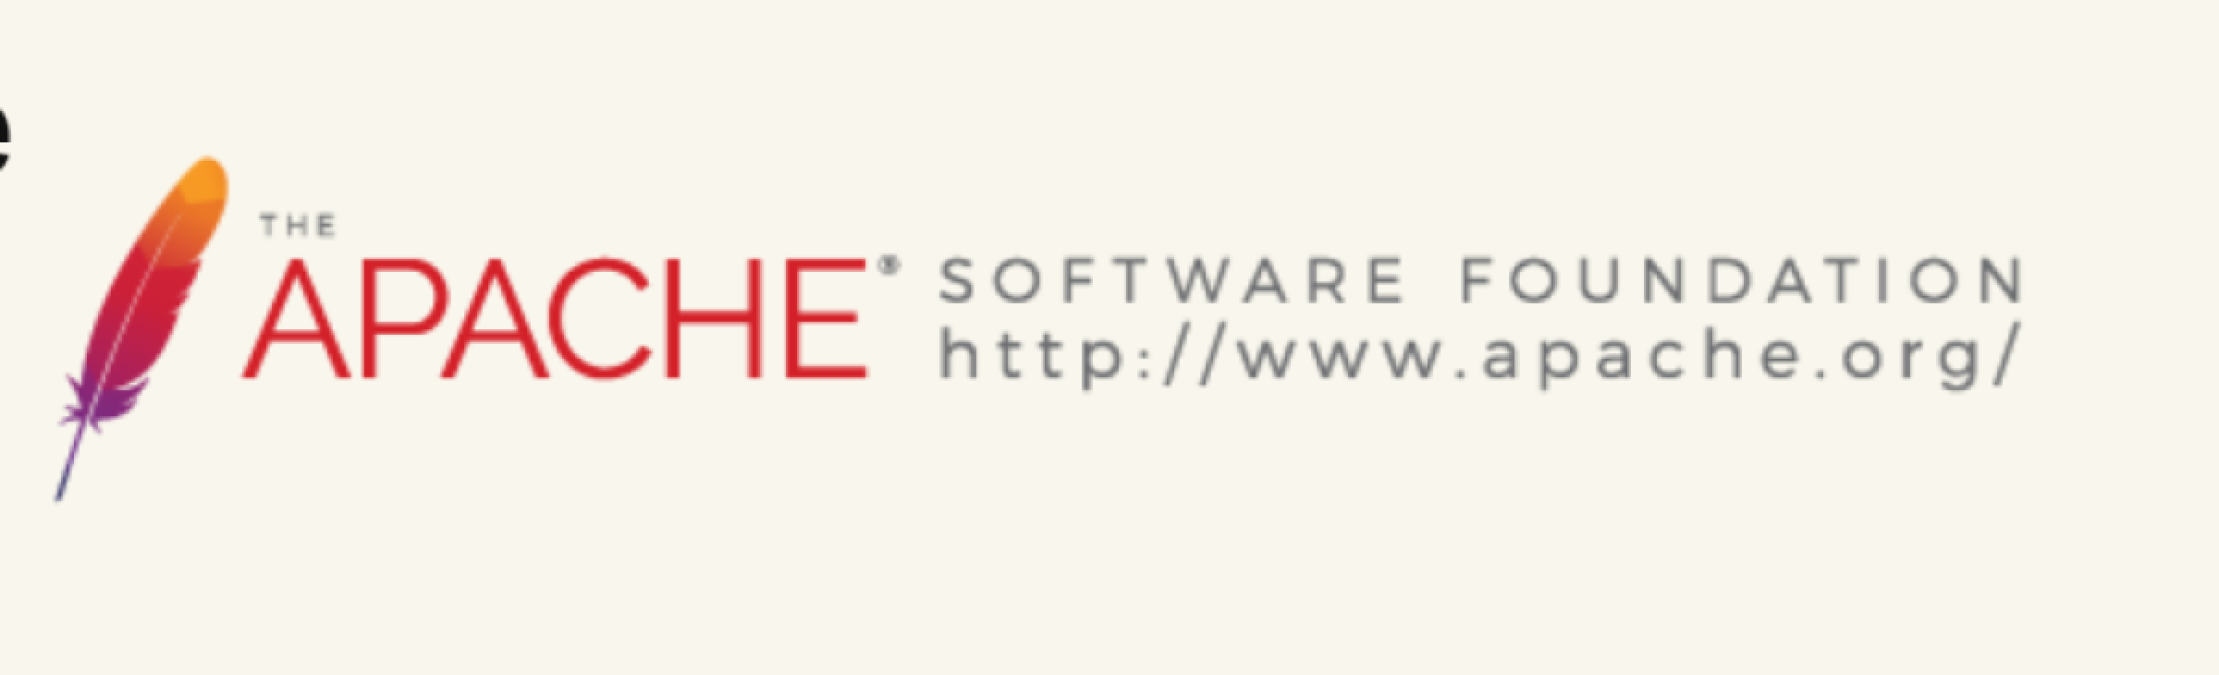 Apache OpenOffice 4.1.11 lançado com aumento do tamanho da fonte na Ajuda